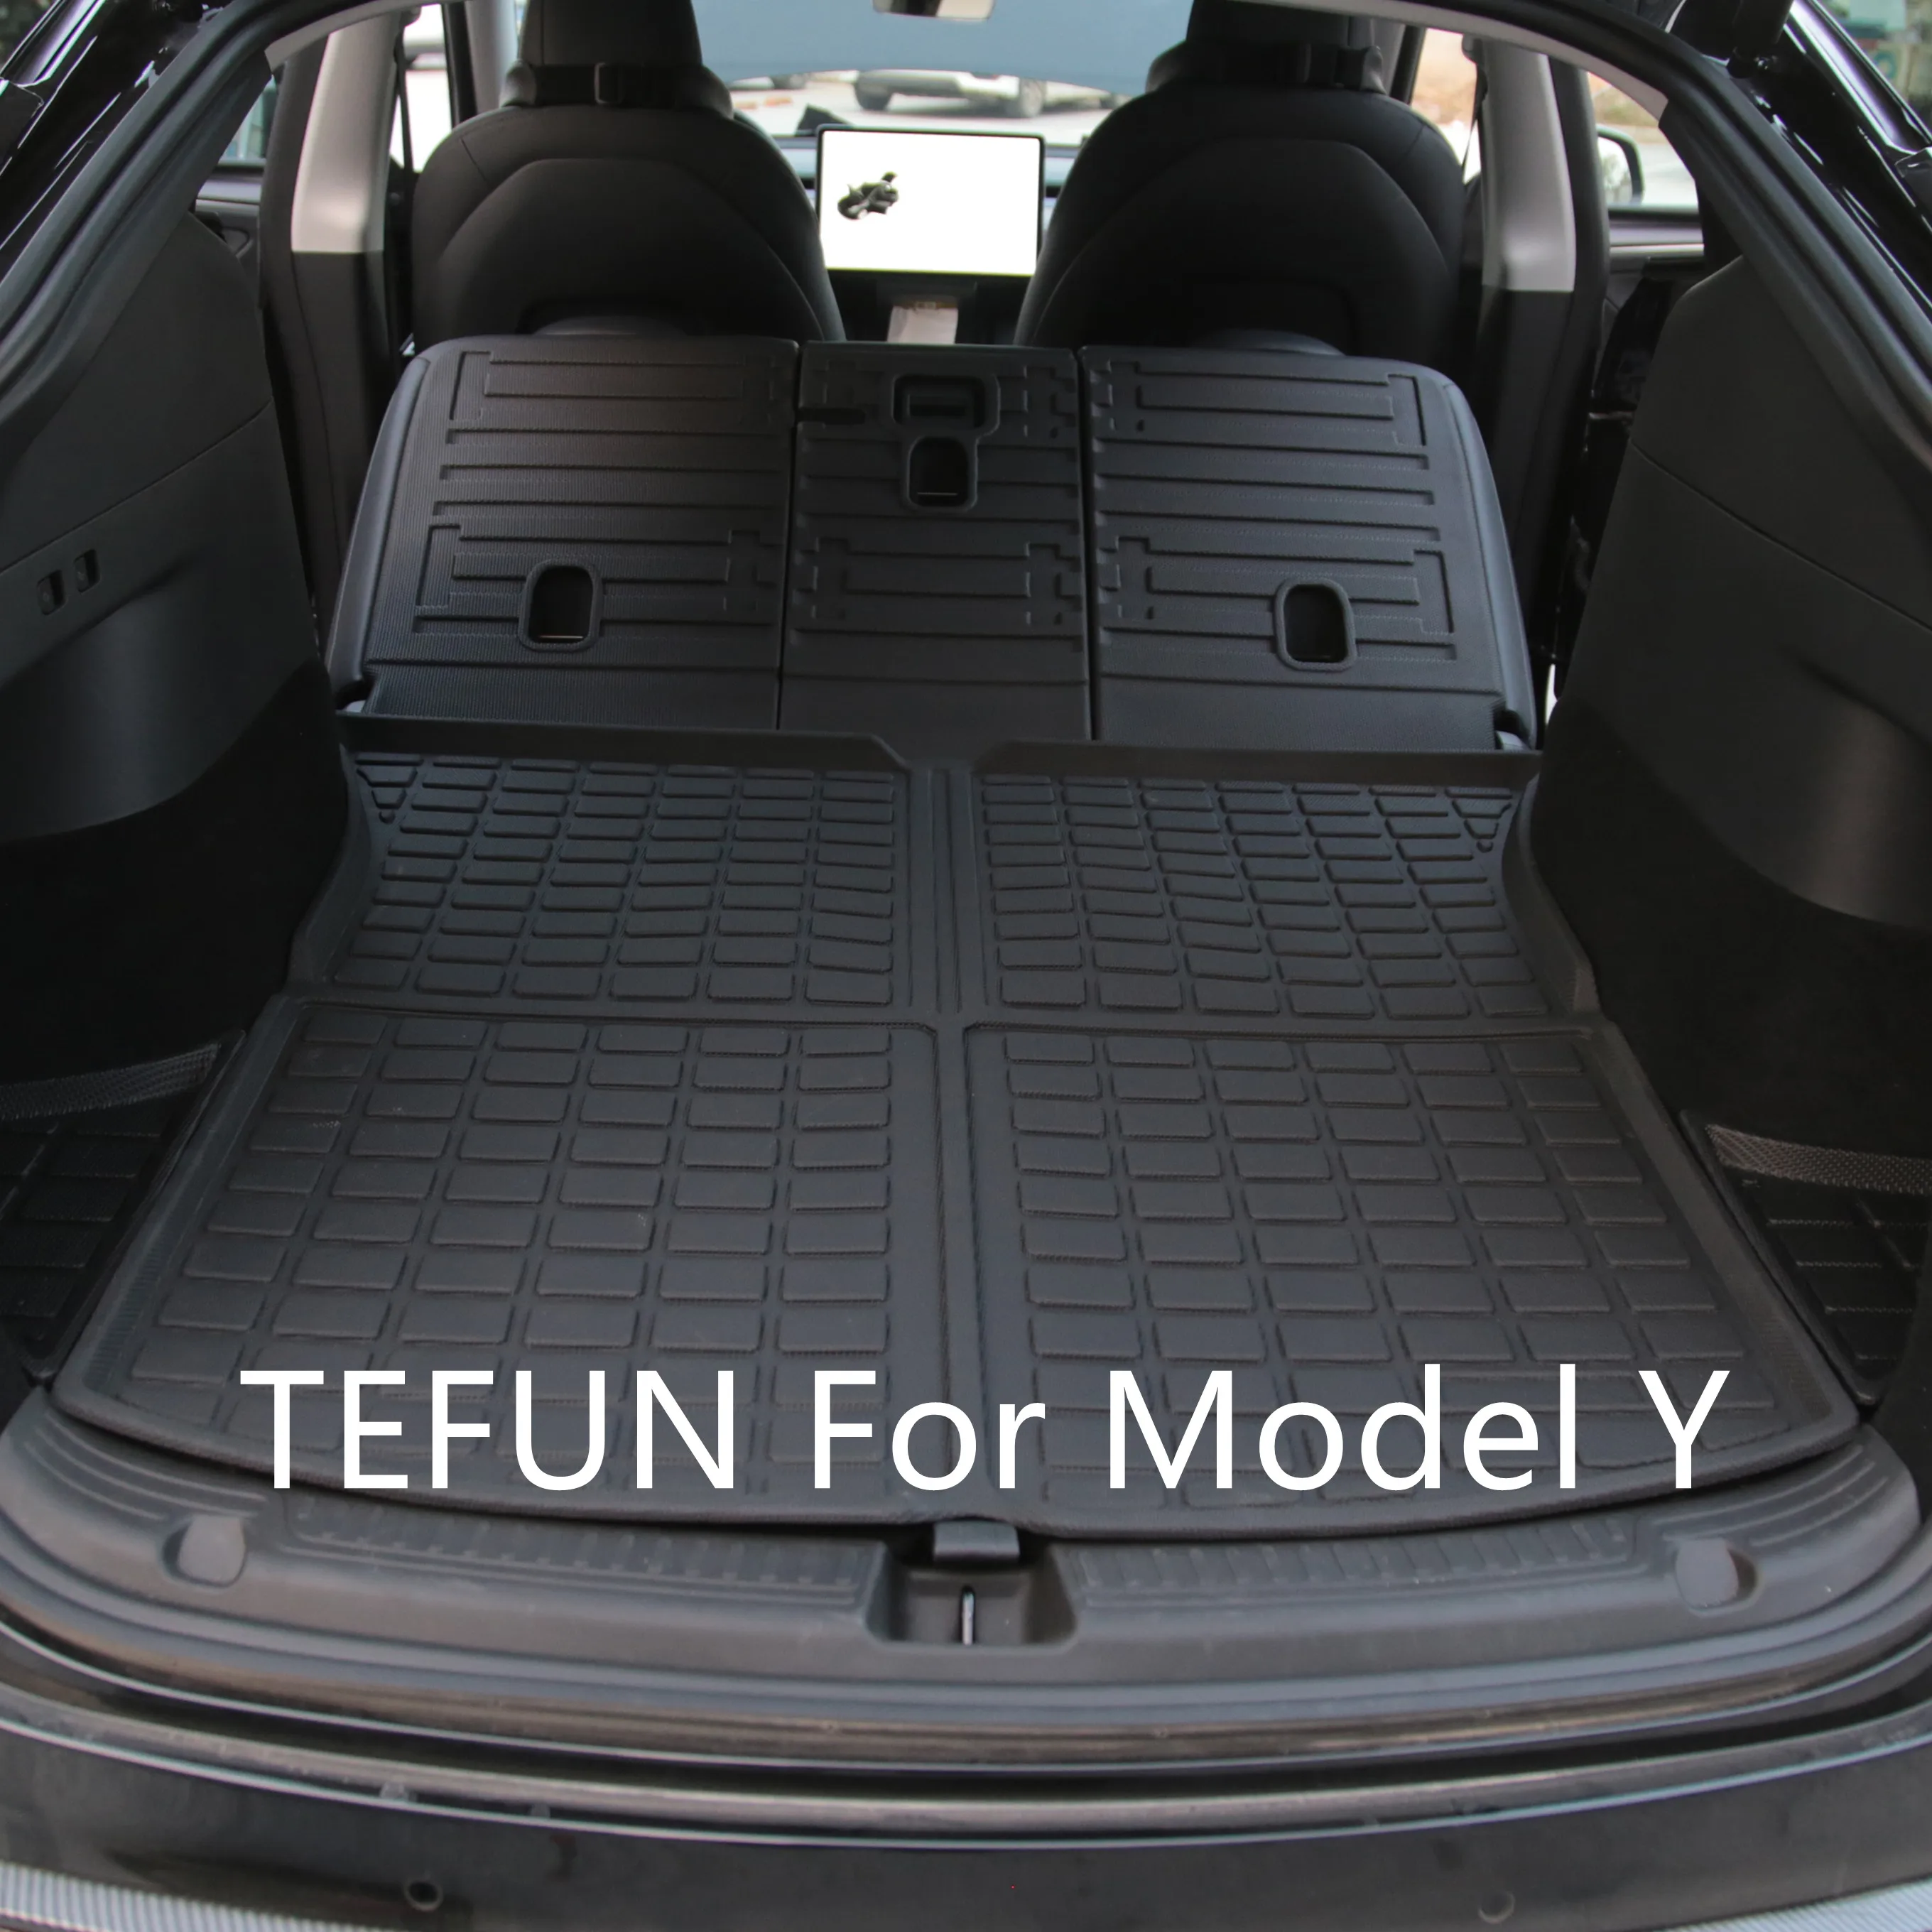 Защитные коврики TEFUN для заднего сиденья Tesla Model Y, противоударные коврики из ТПЭ, чехлы на сиденья и коврики для багажника, коврик для ног, аксессуары для модели Y 2022 коврики автомобильные из тпэ xpe коврики для багажника tesla model y водонепроницаемые подходят для любой погоды прочная подкладка оригинал